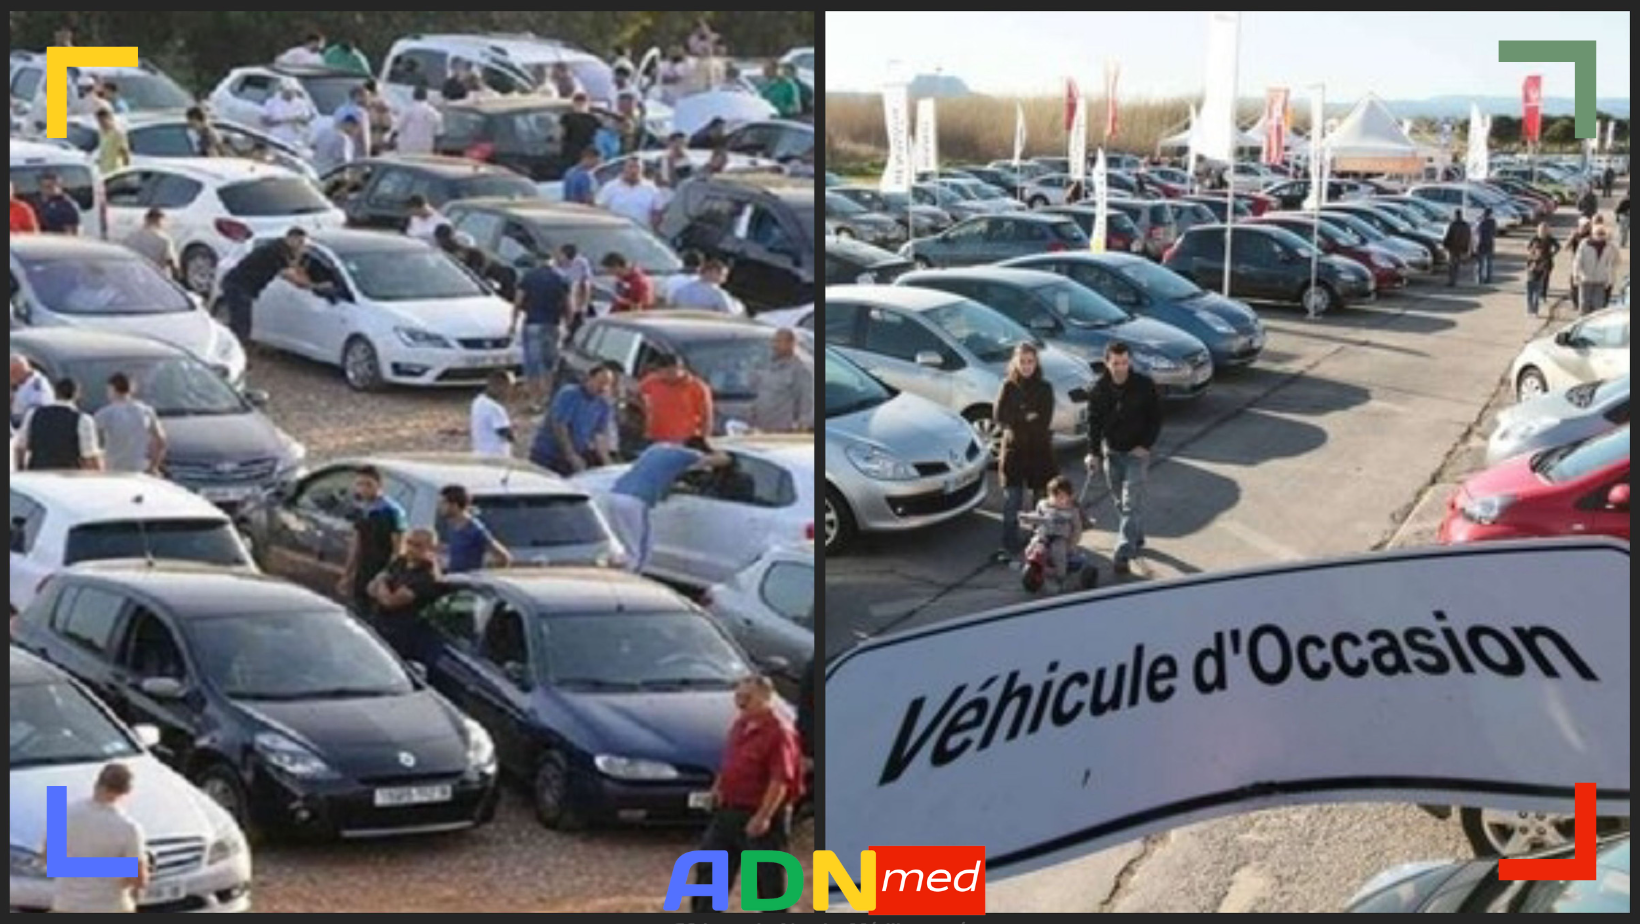 Algérie : marché de voiture d’occasion en Algérie